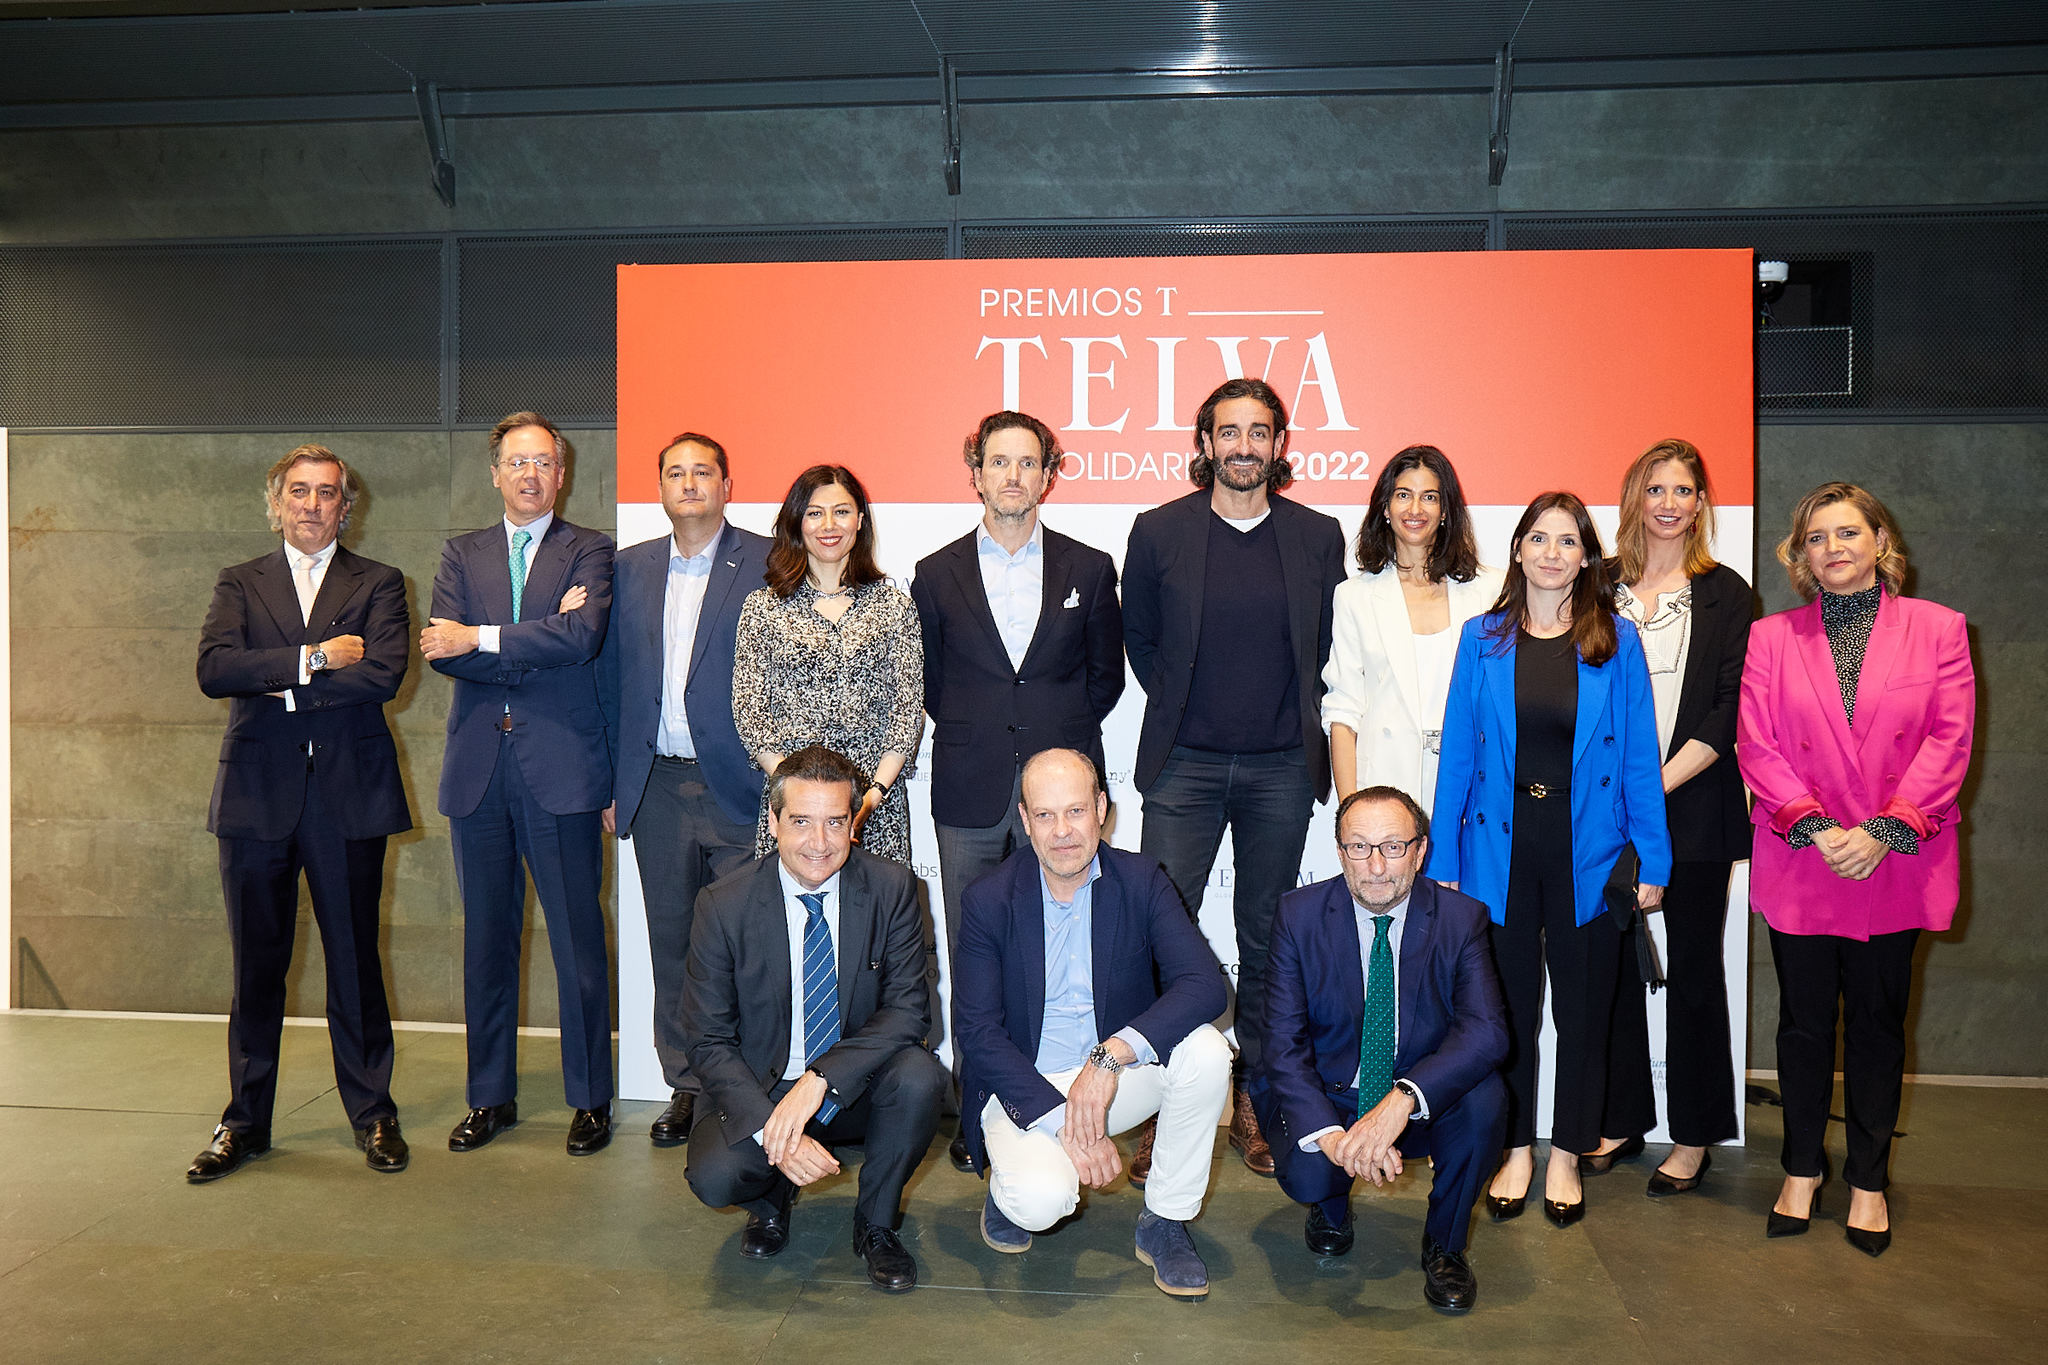 Los patrocinadores de los premios TELVA Solidaridad.